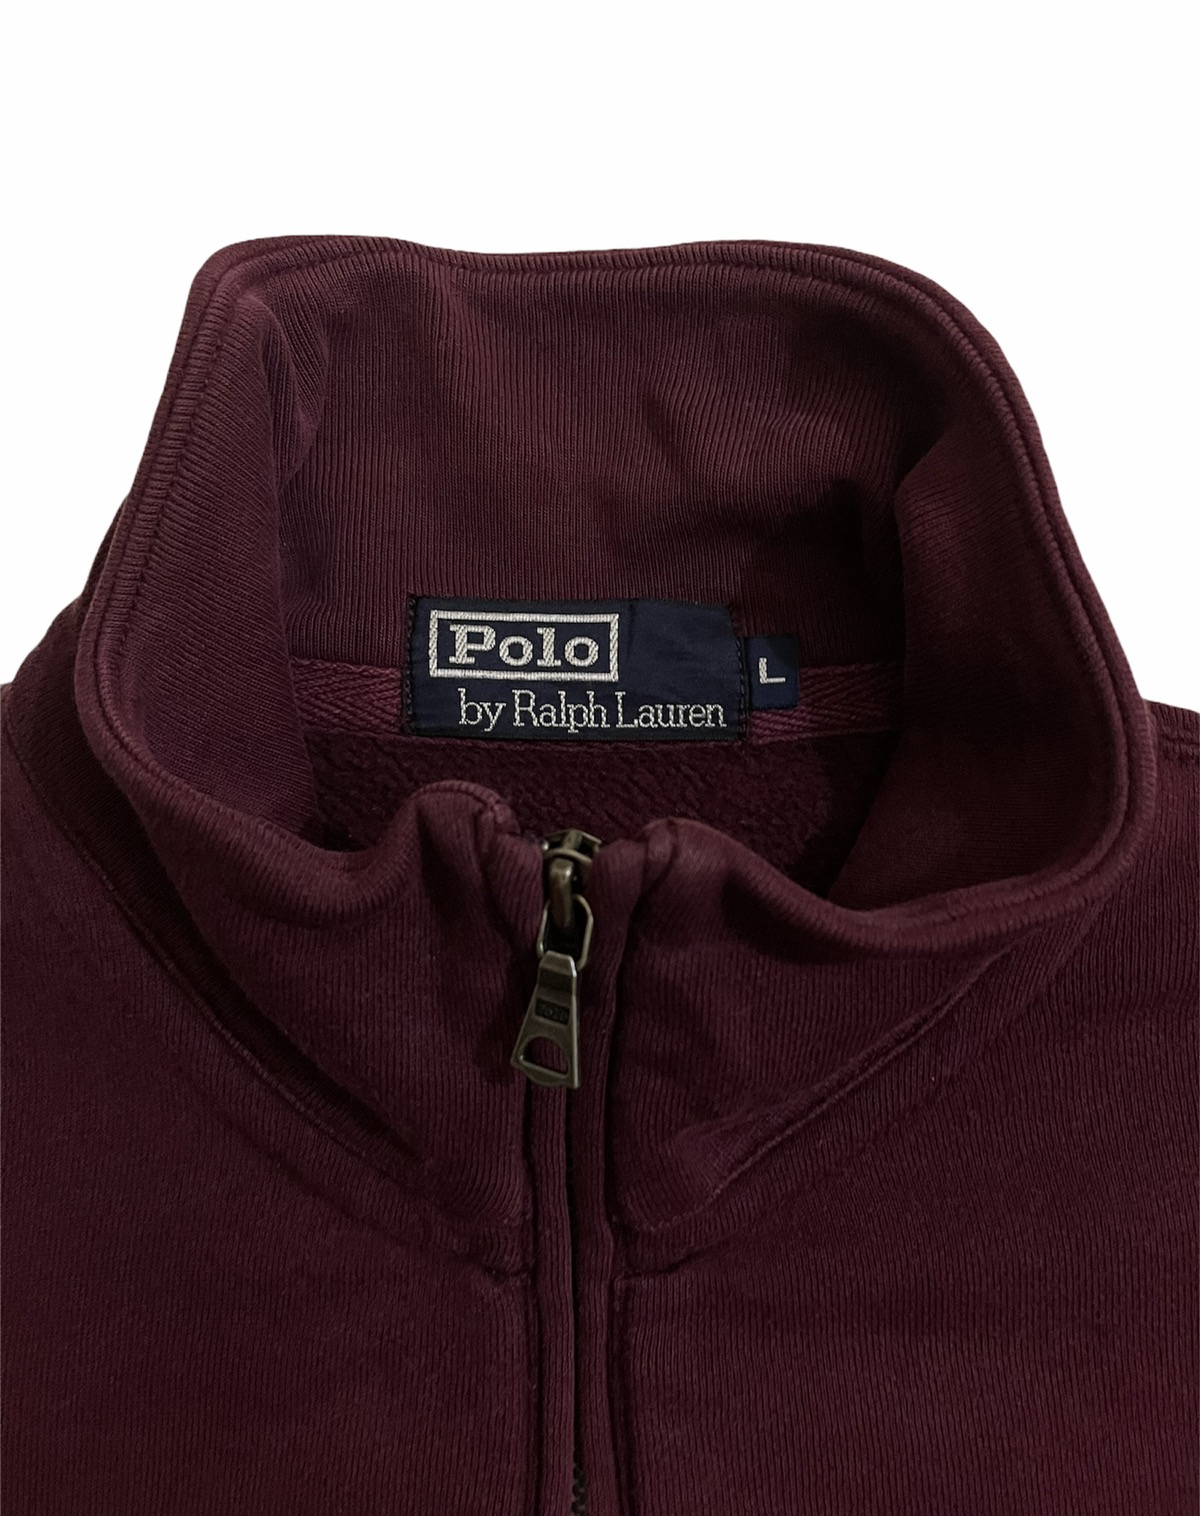 Polo Ralph Lauren - Vintage Polo Ralph Lauren Sweatshirt - 4